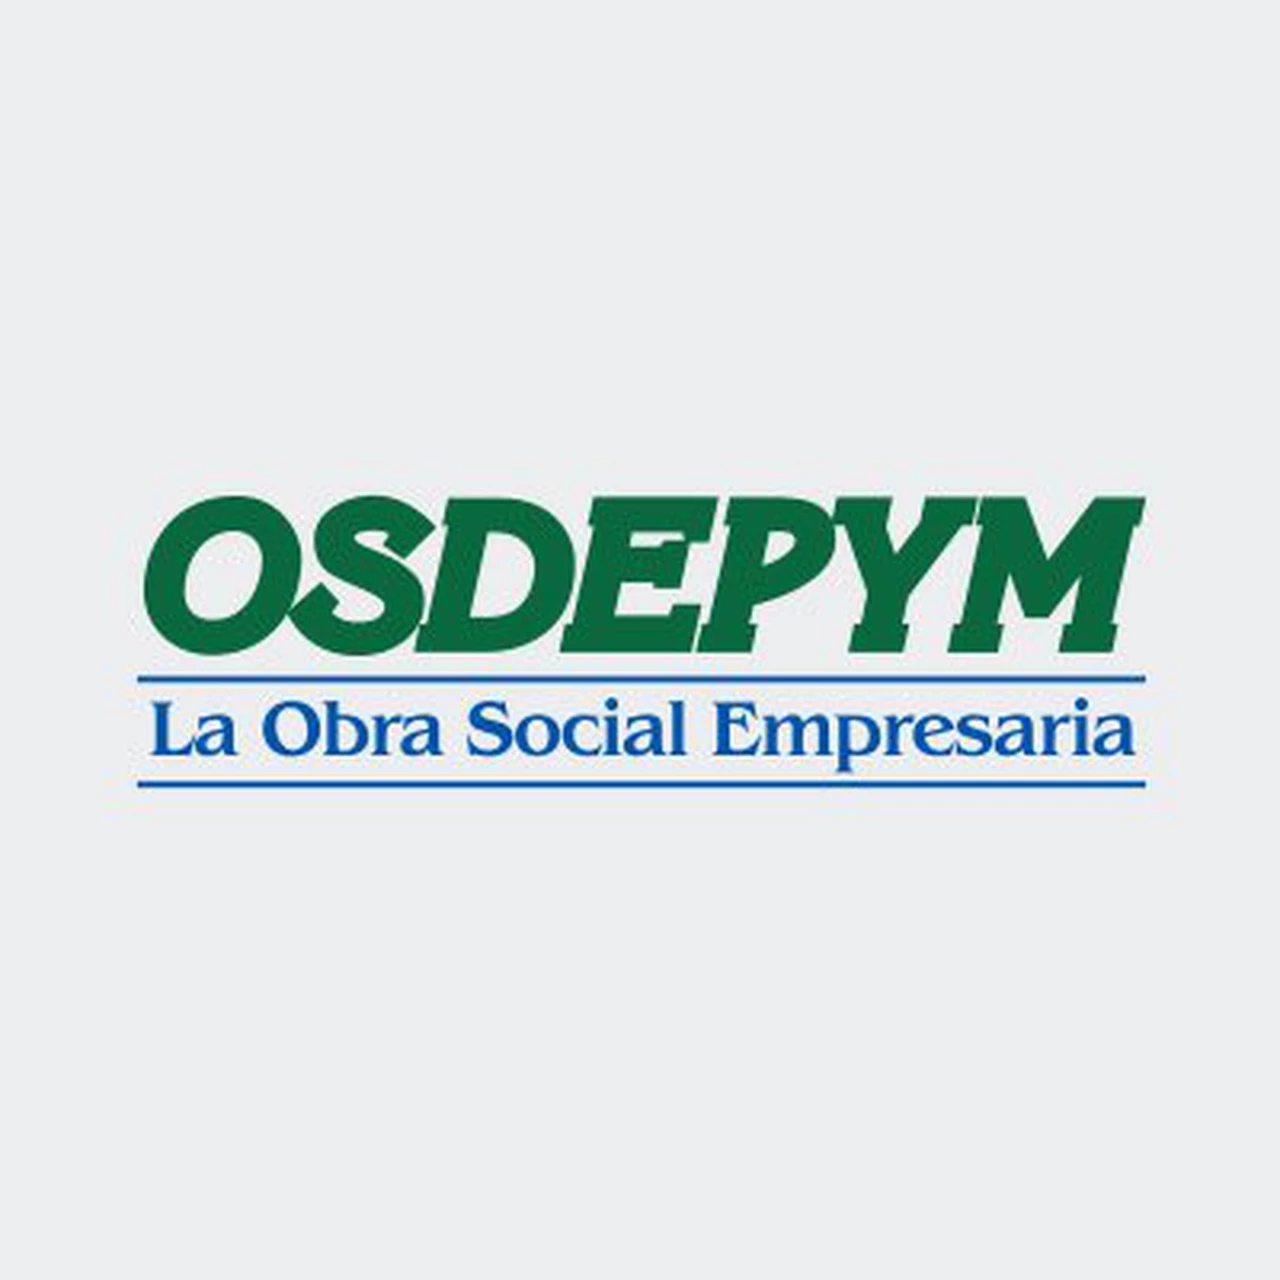 OSDEPYM reconoce a los prestadores comprometidos con el futuro del sistema de salud argentino